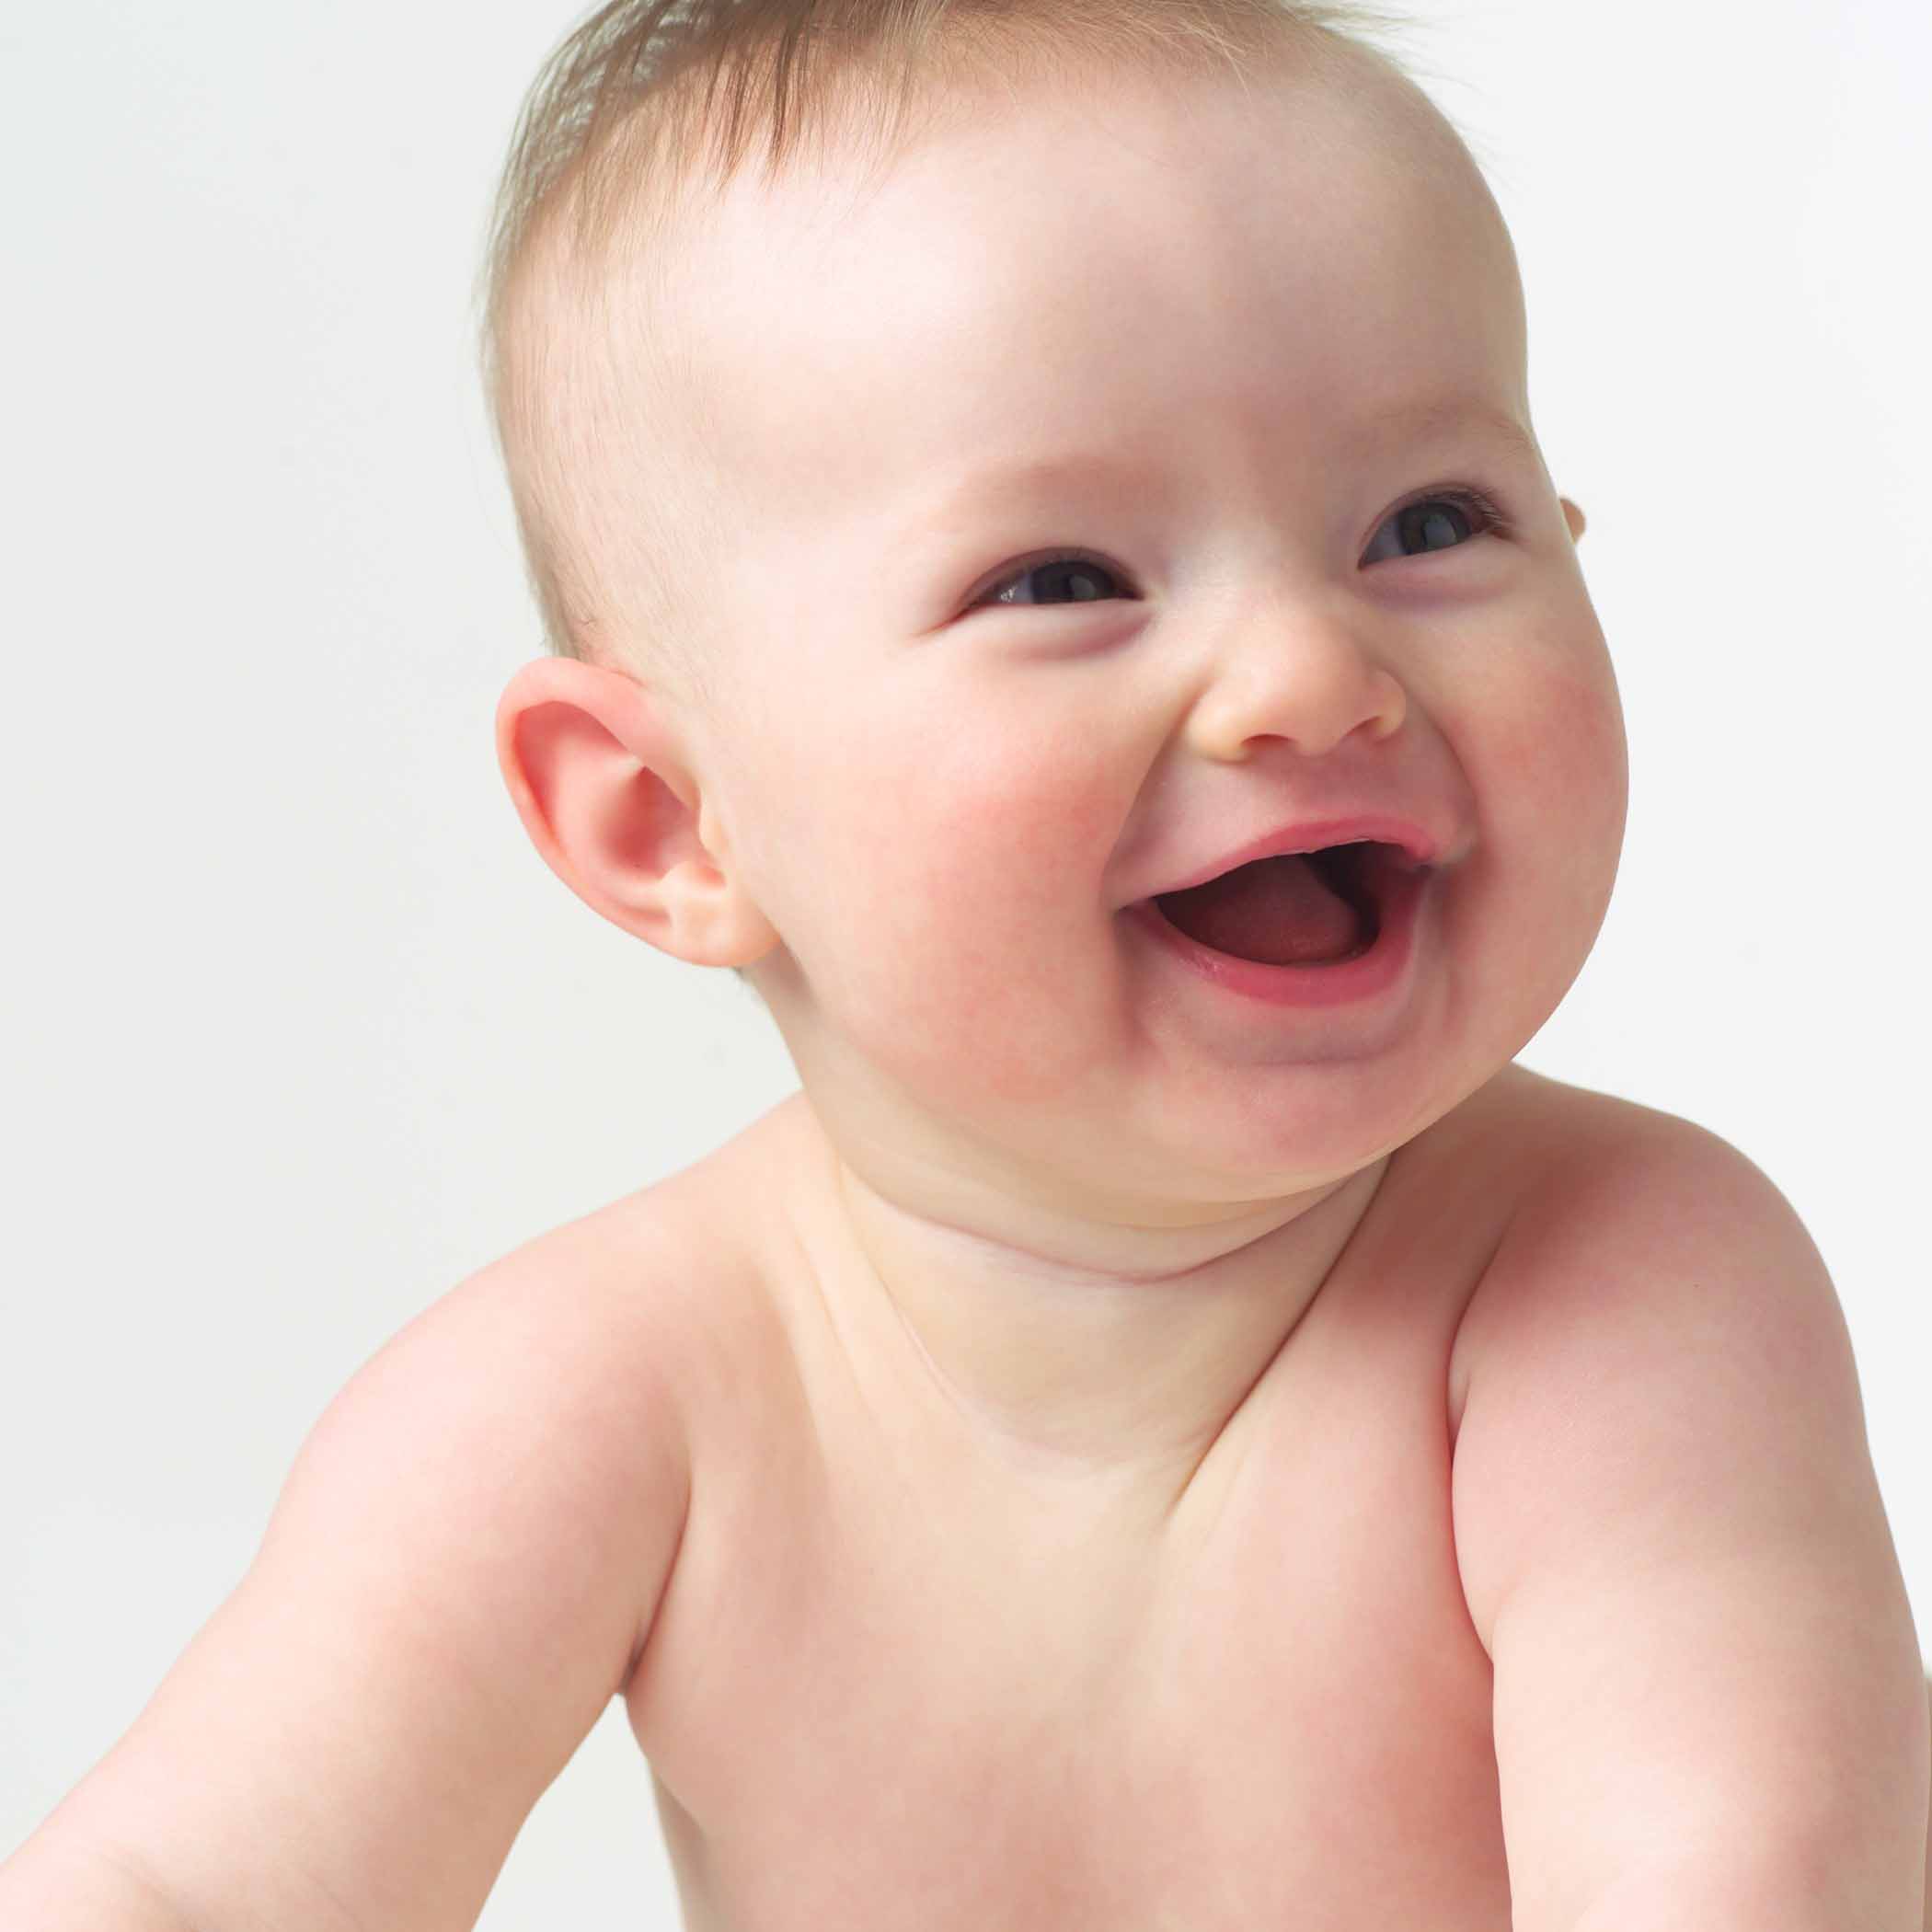 49+] Cute Babies Wallpapers Free Download - WallpaperSafari